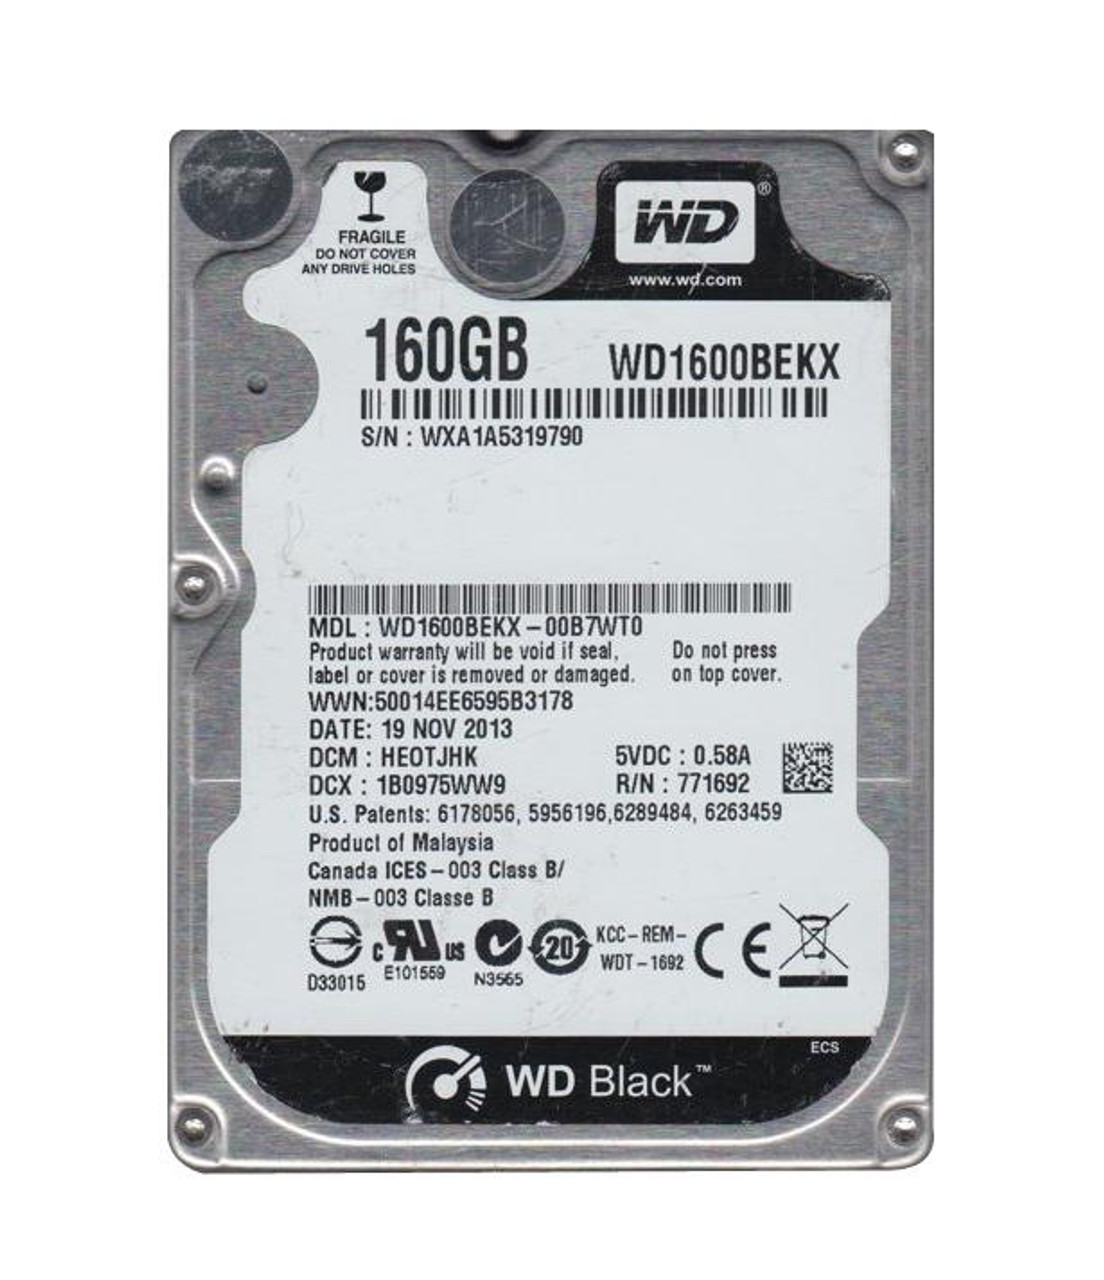 WD1600BEKX-00B7WT0 Western Digital Black 160GB 7200RPM SATA 6Gbps 16MB Cache 2.5-inch Internal Hard Drive